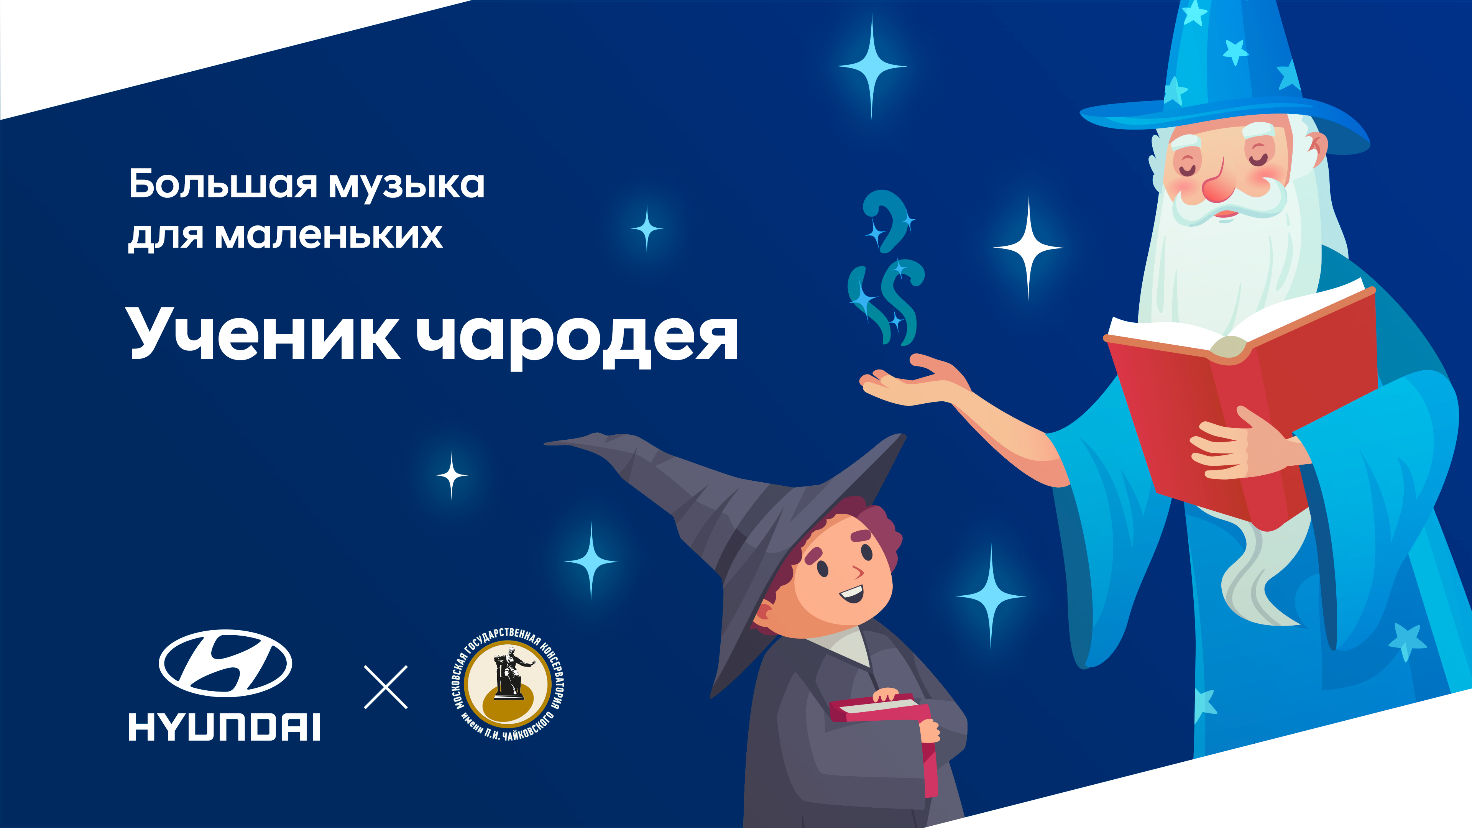 Hyundai и Московская консерватория проведут детский концерт «Ученик чародея»